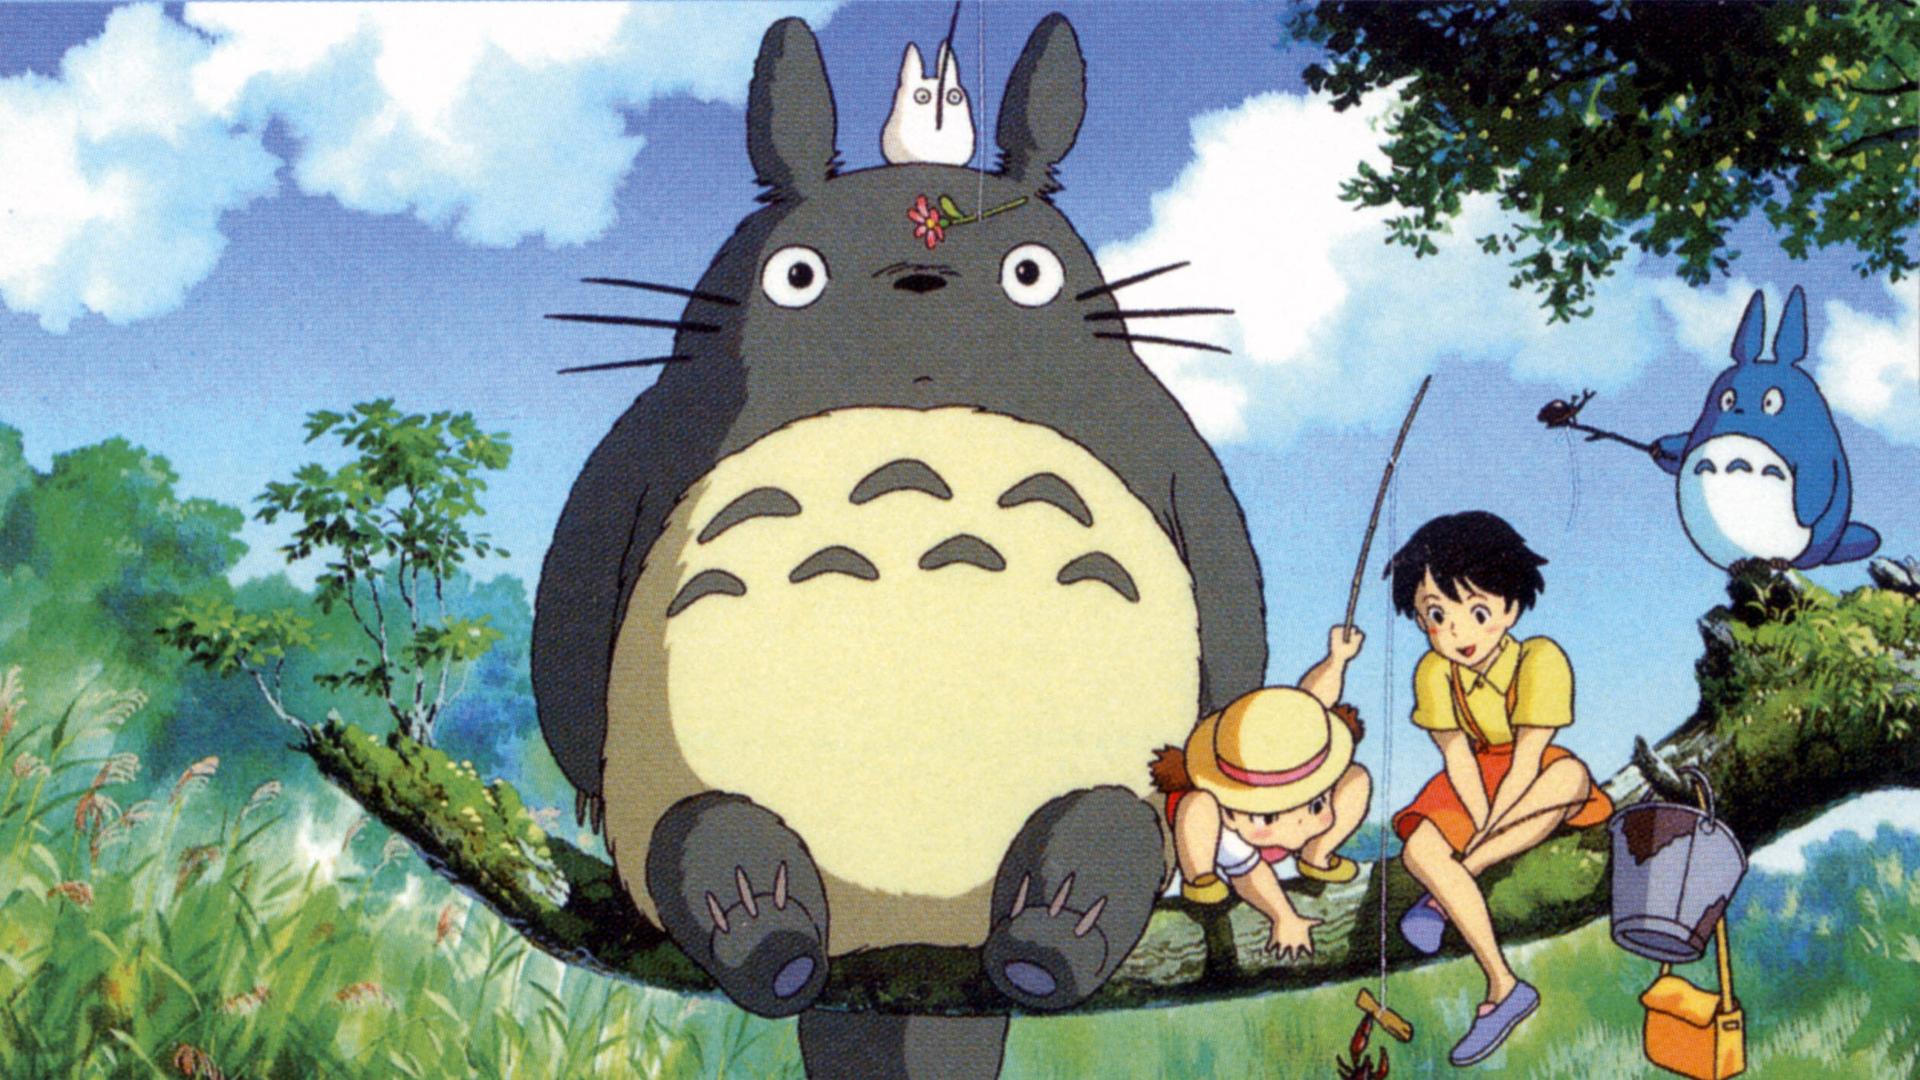 Filmstill aus dem Animationsfilm "My Neighbour Totoro": zwei Katzen und zwei Kinder sitzen auf einem Ast.